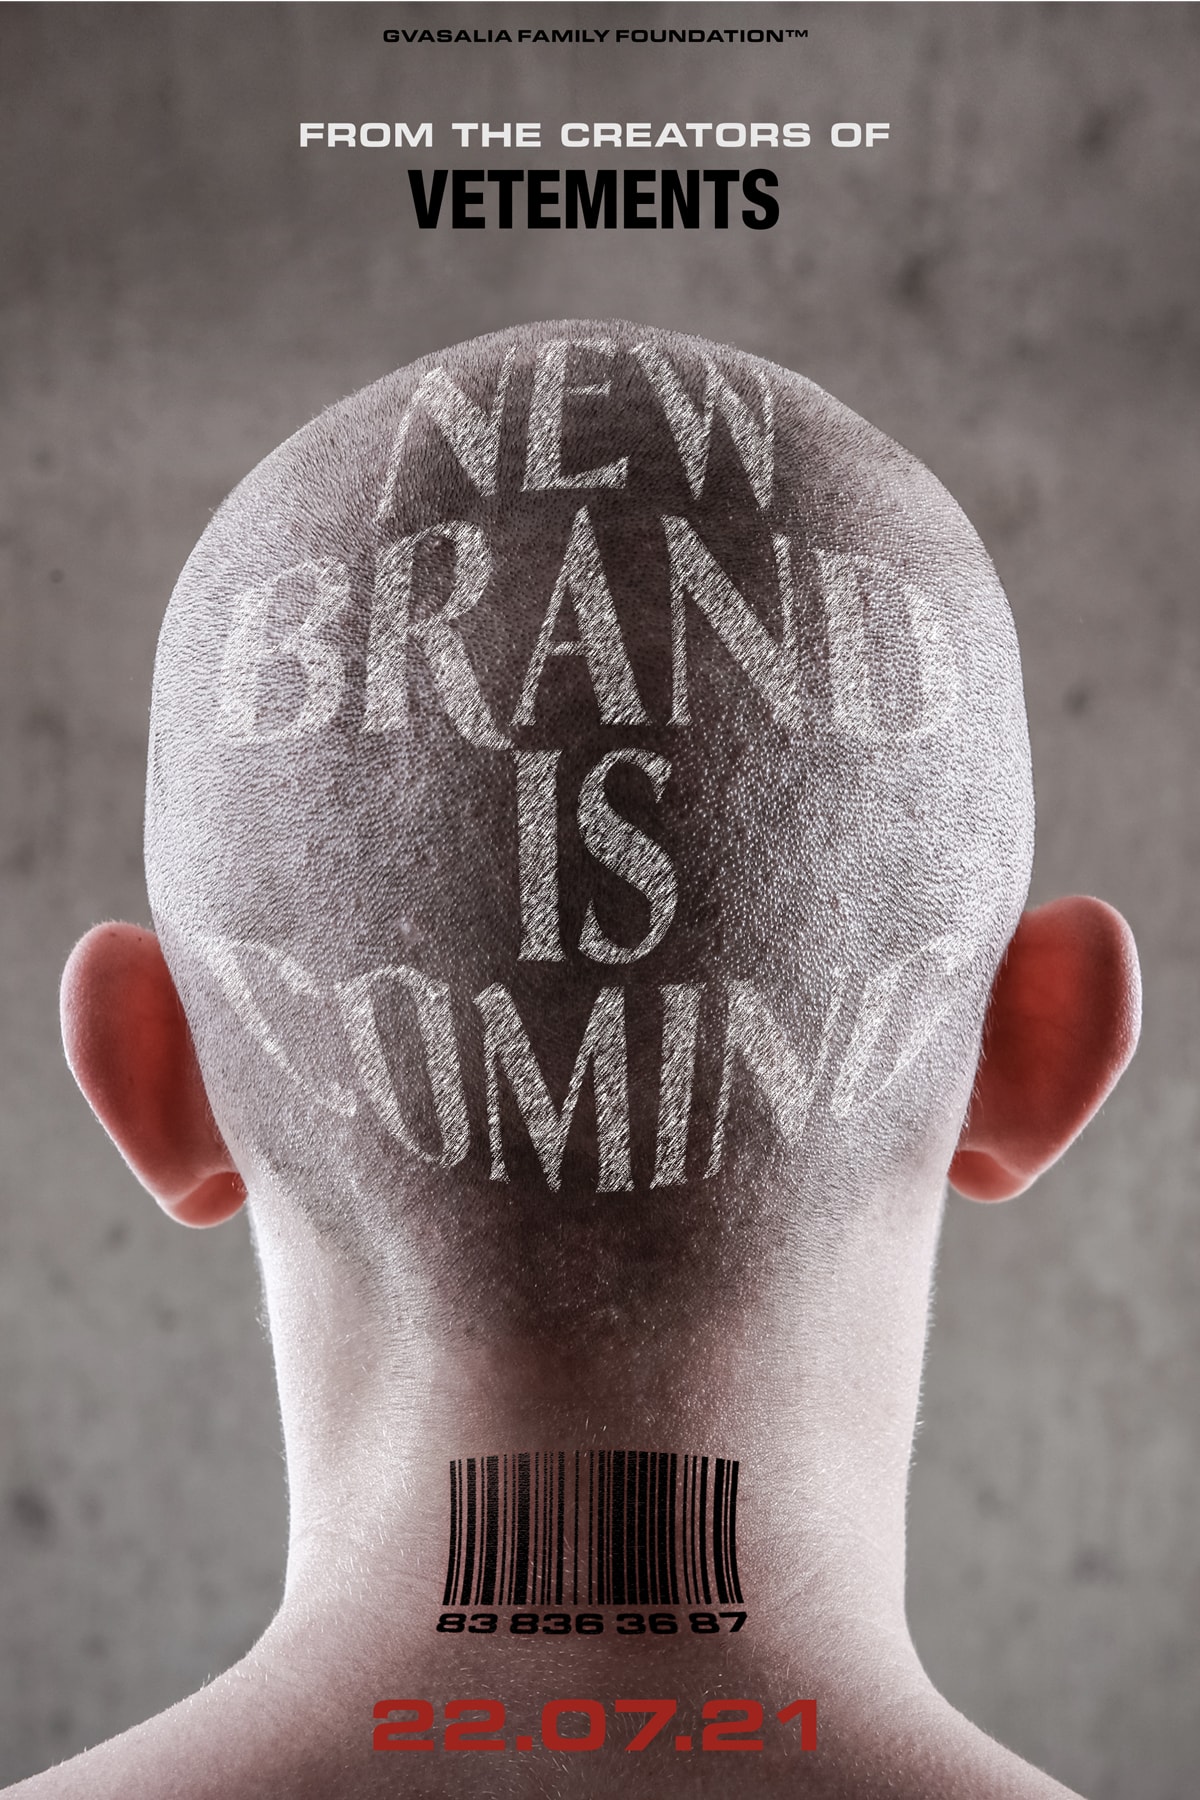 Vetements New Brand Secret Project Teaser Announcement